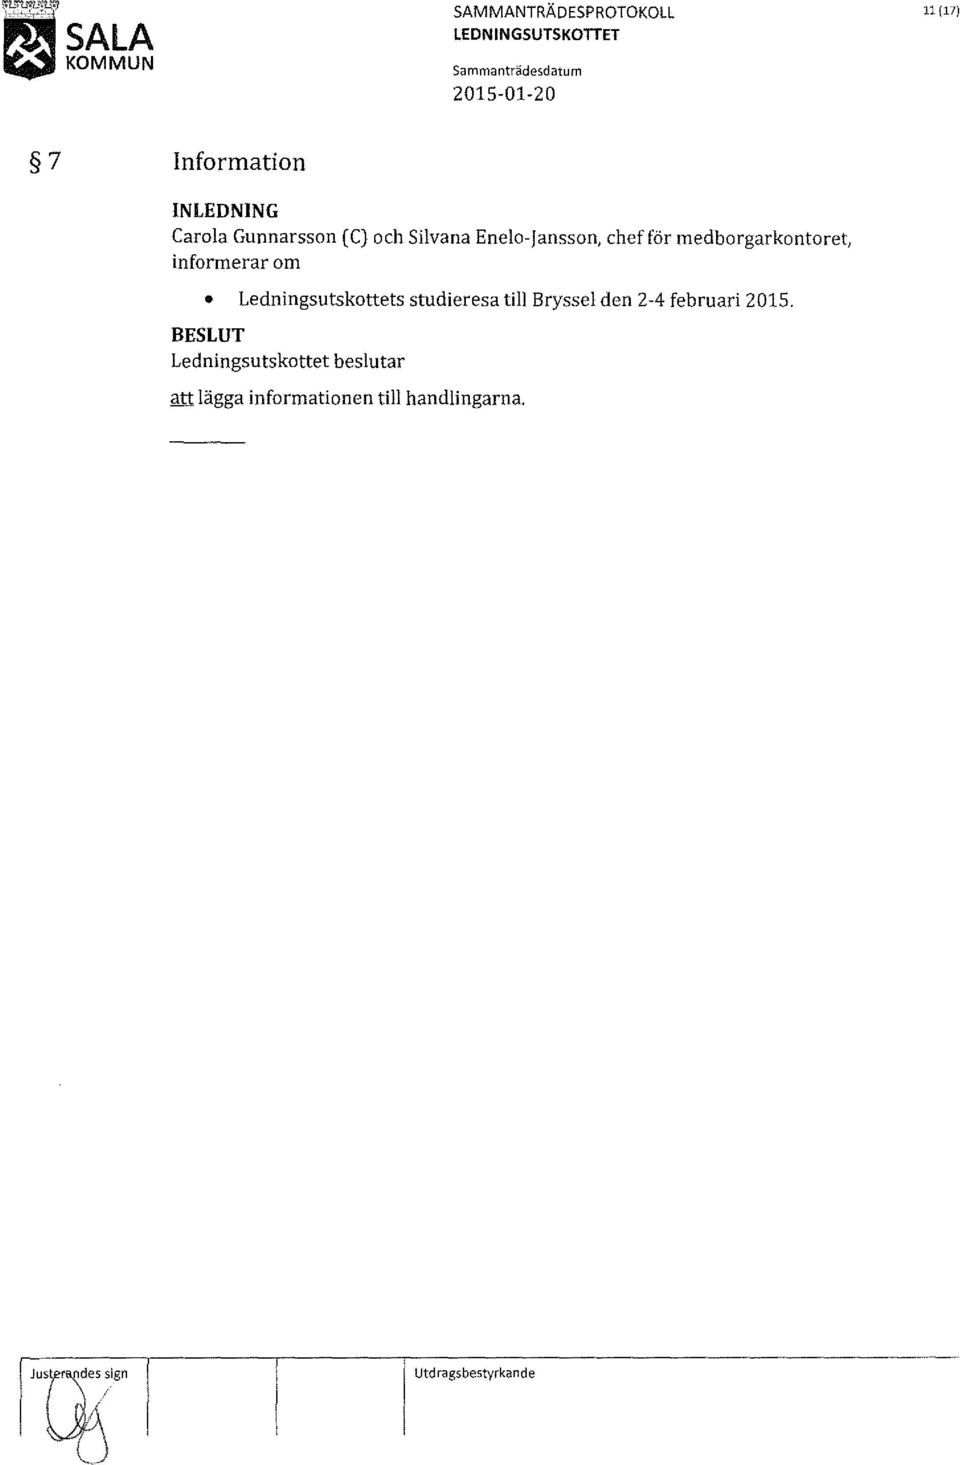 Ledningsutskottets studieresa till Bryssel den 2-4 februari 2015.